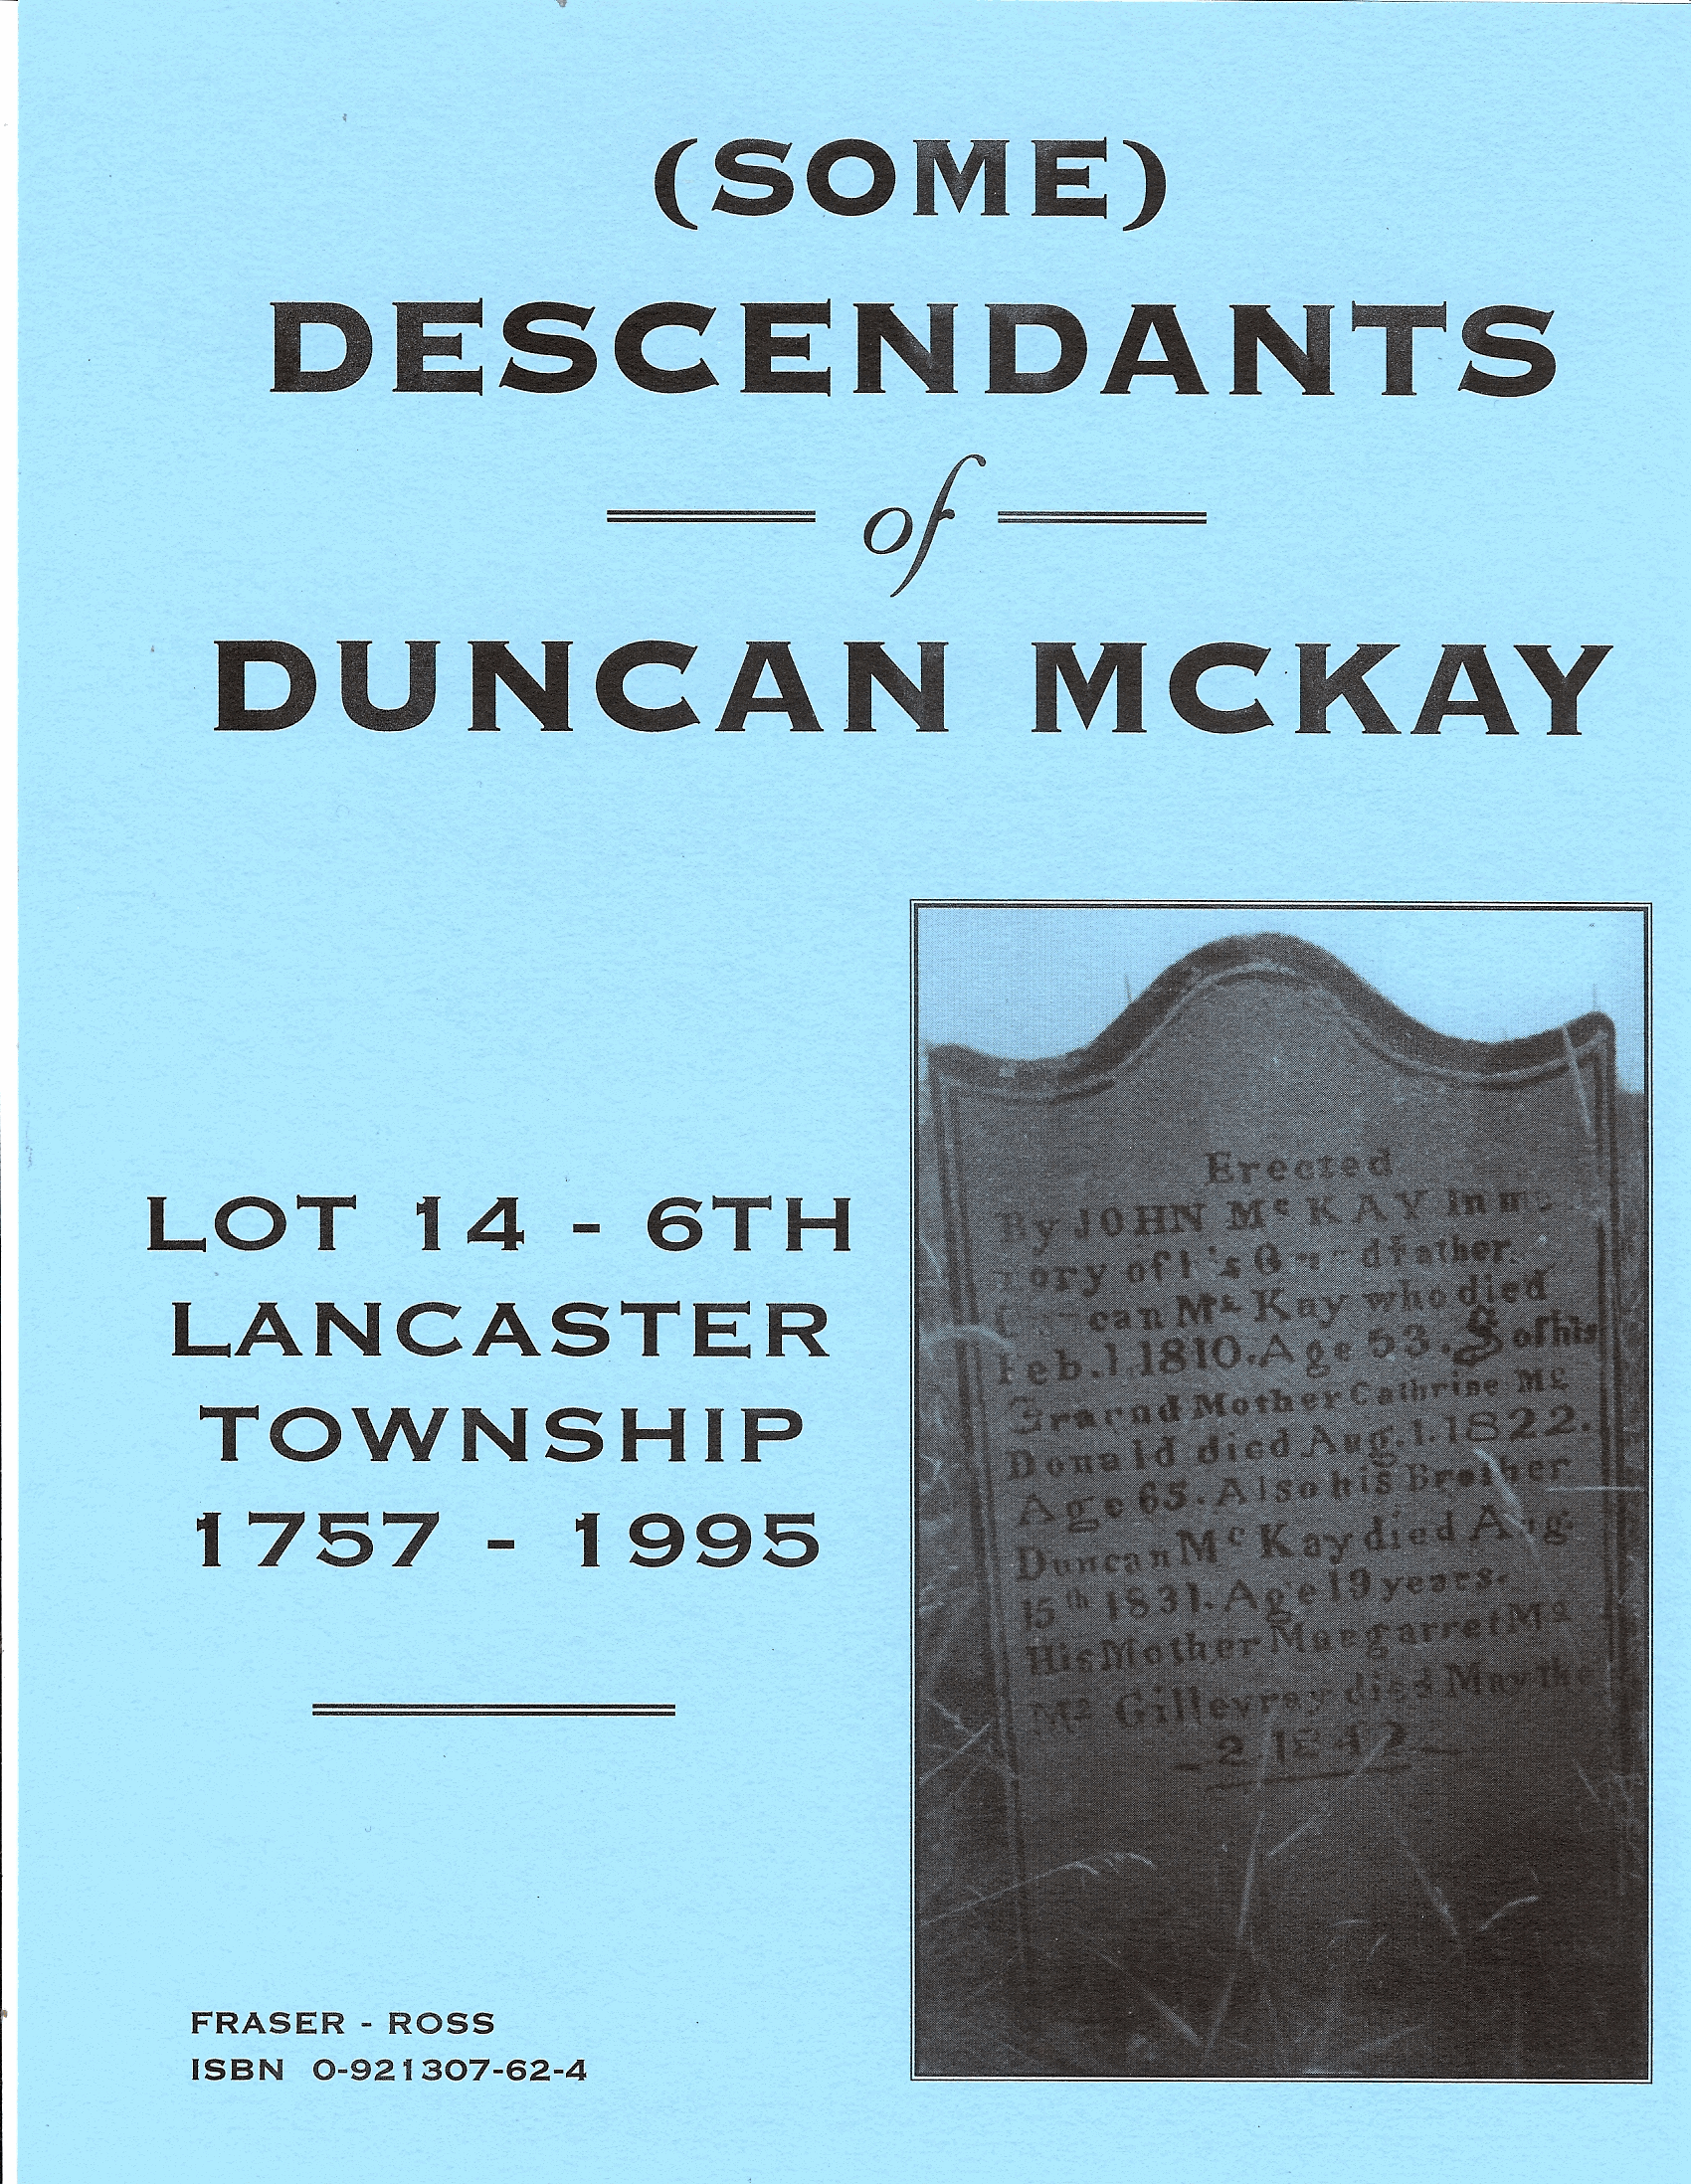 DuncanMcKay